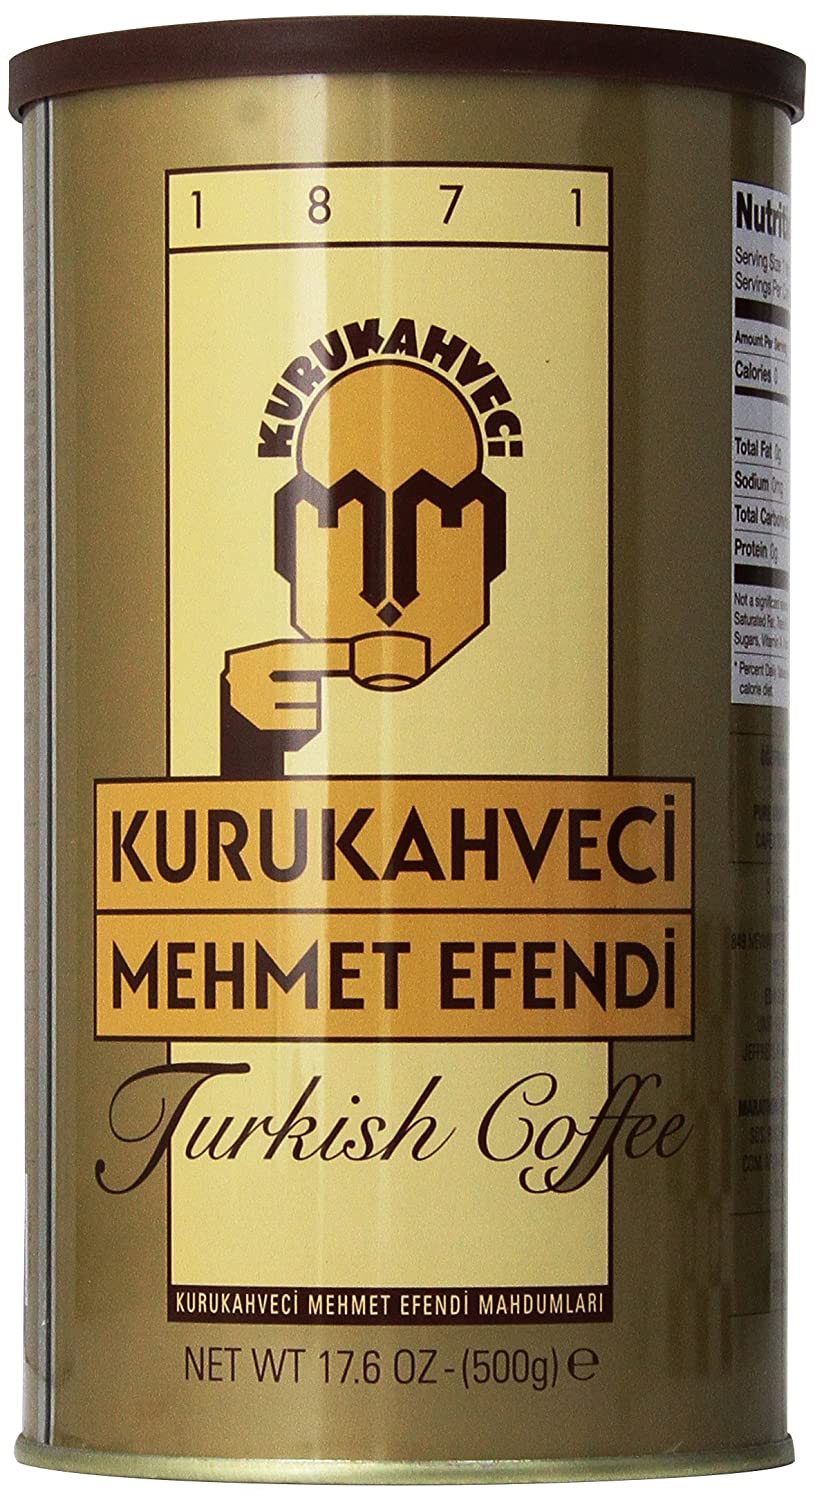 1. Kurukahveci Mehmet Efendi Turkish Coffee 